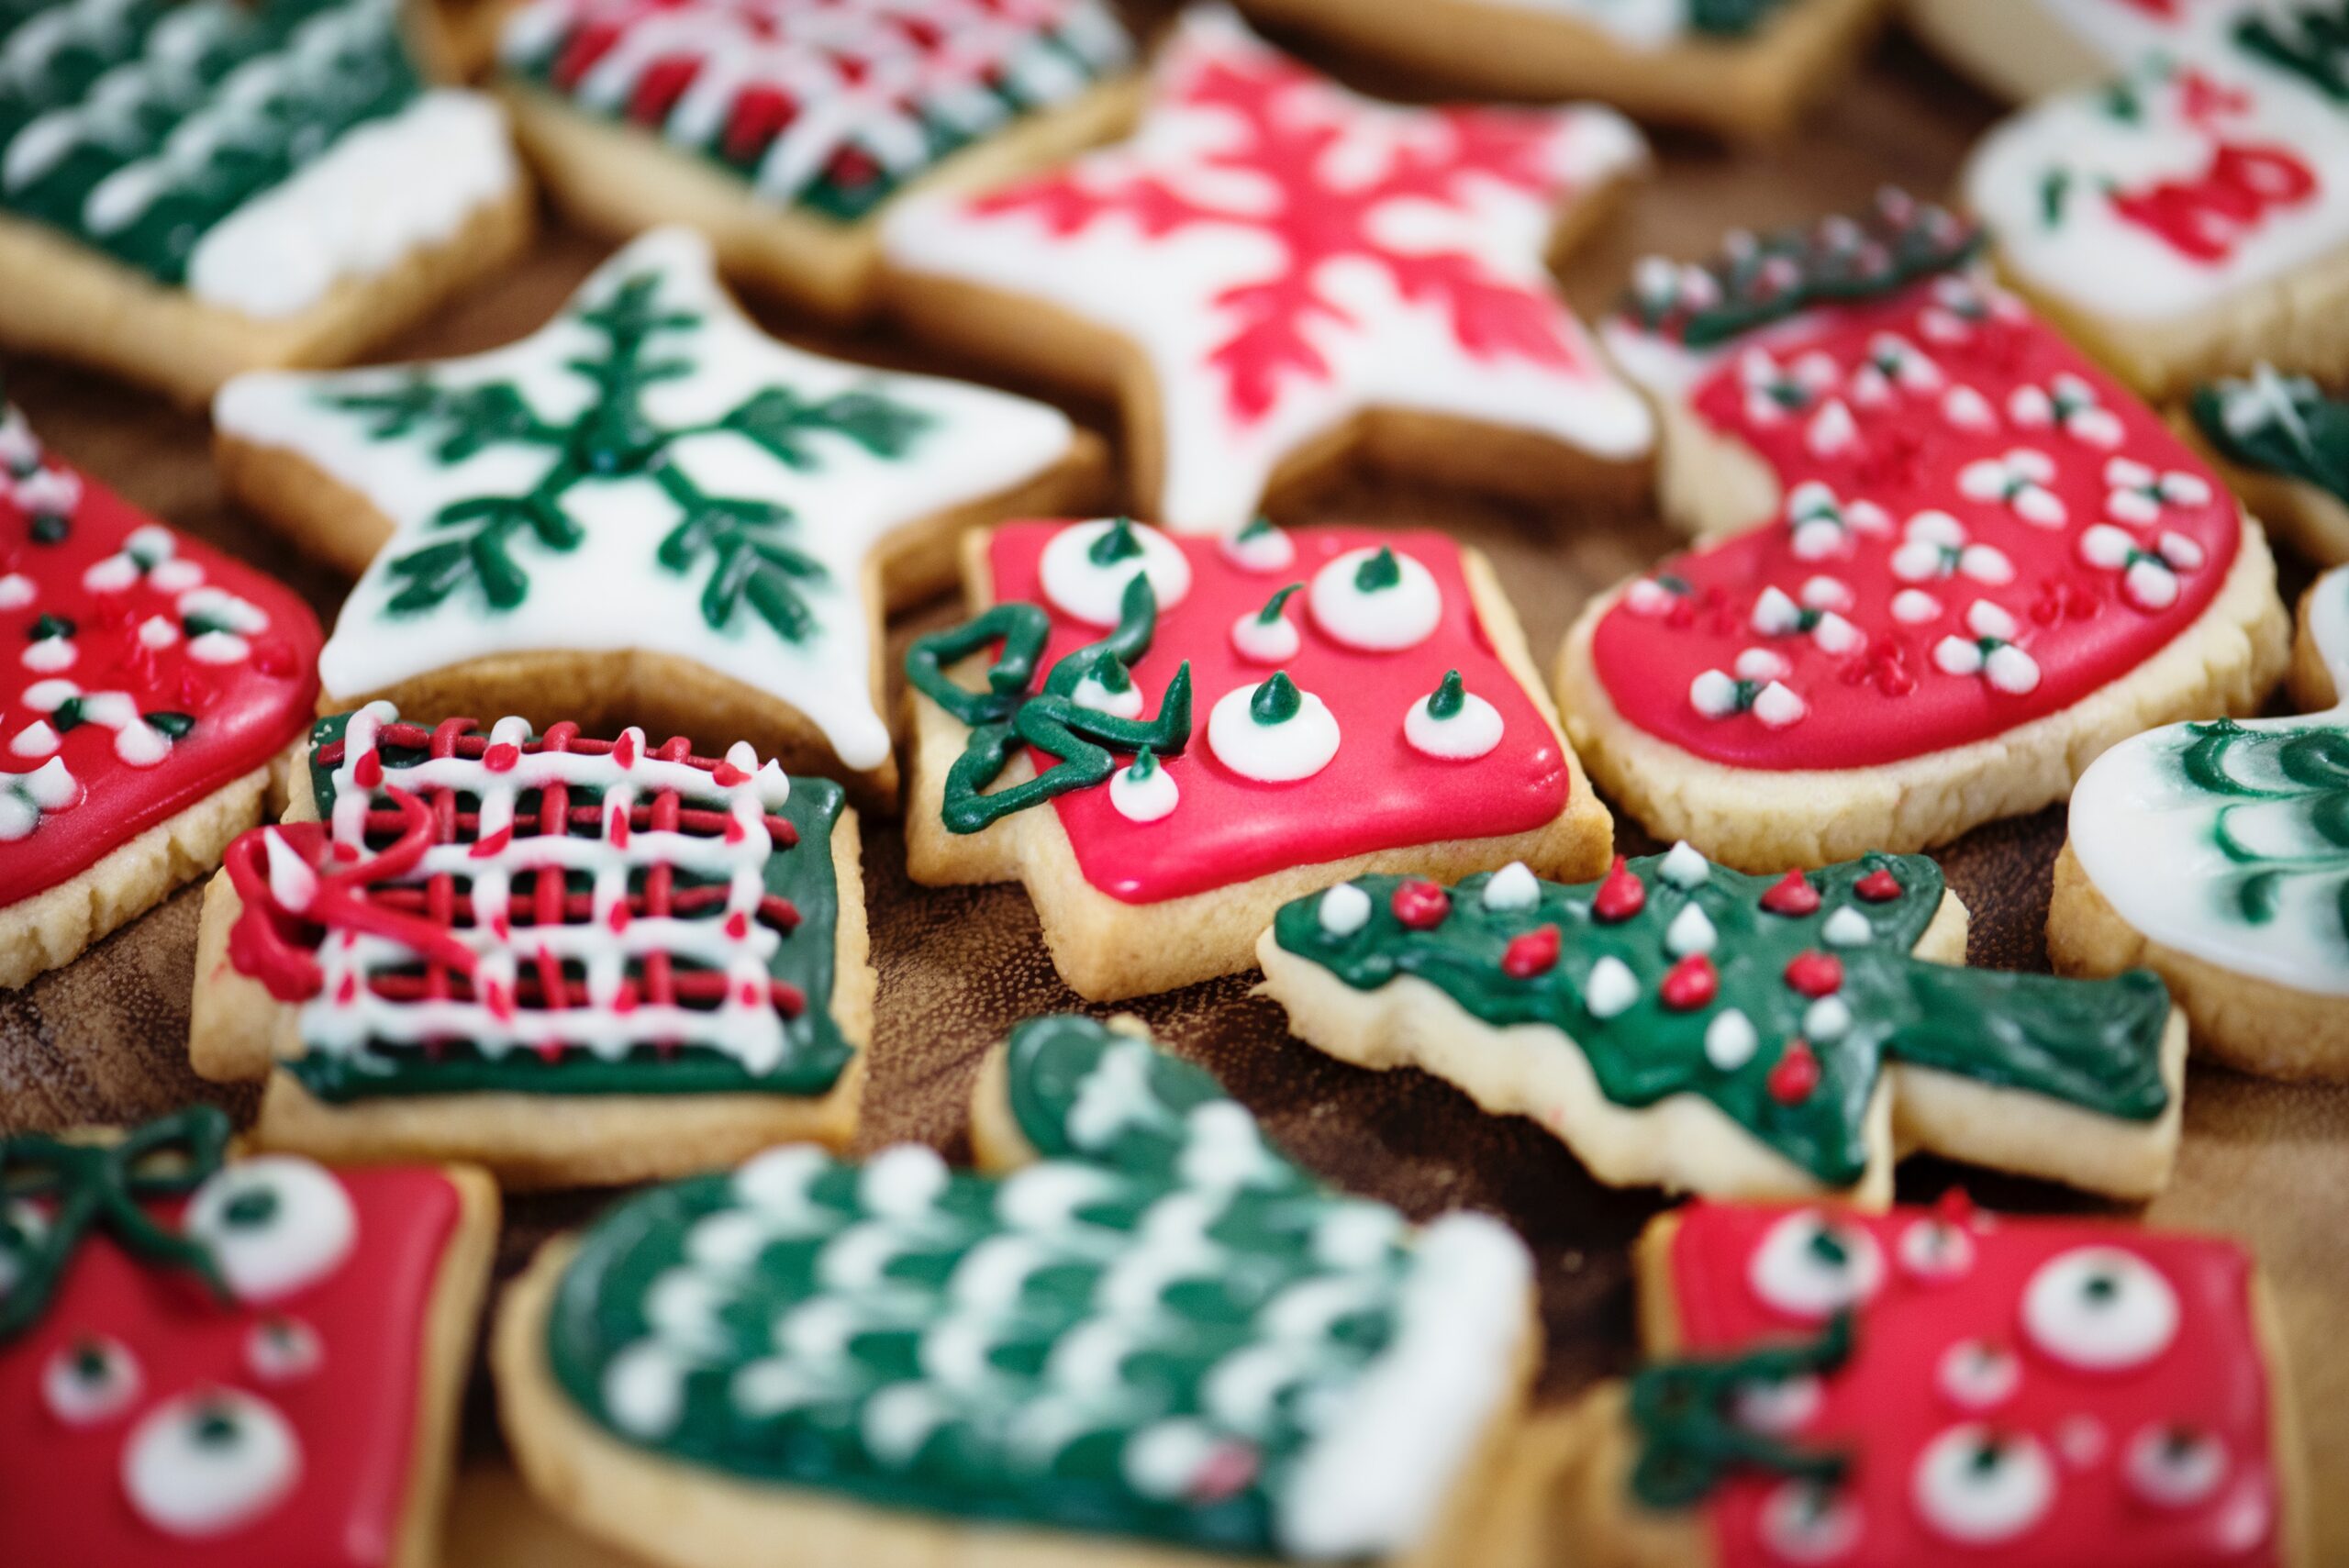 Χριστούγεννα: Τρεις εύκολοι τρόποι να μην πάρετε βάρος στις γιορτές